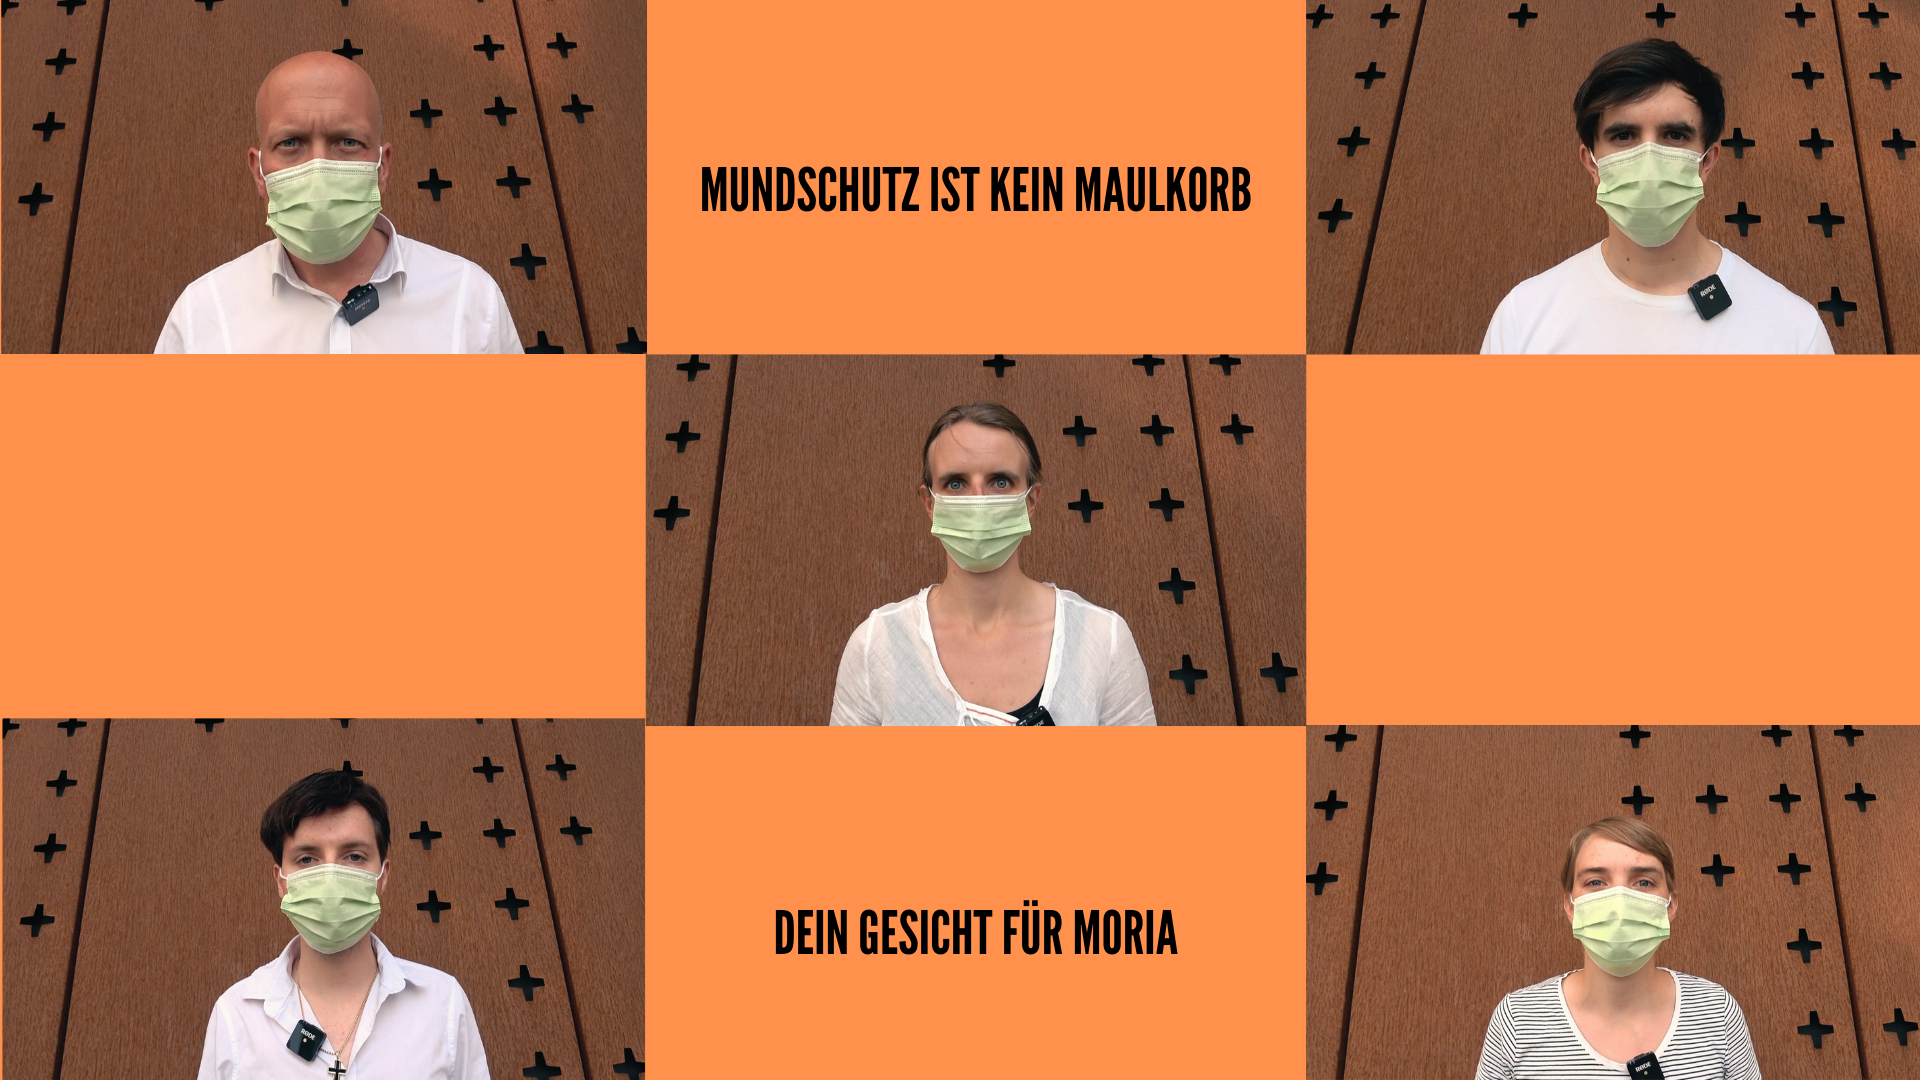 Mundschutz ist kein Maulkorb – Zeig dein Gesicht für Moria – Aktion der Christuskirche Köln ruft zu Online-Demo und Evakuierung der Flüchtlingslager auf